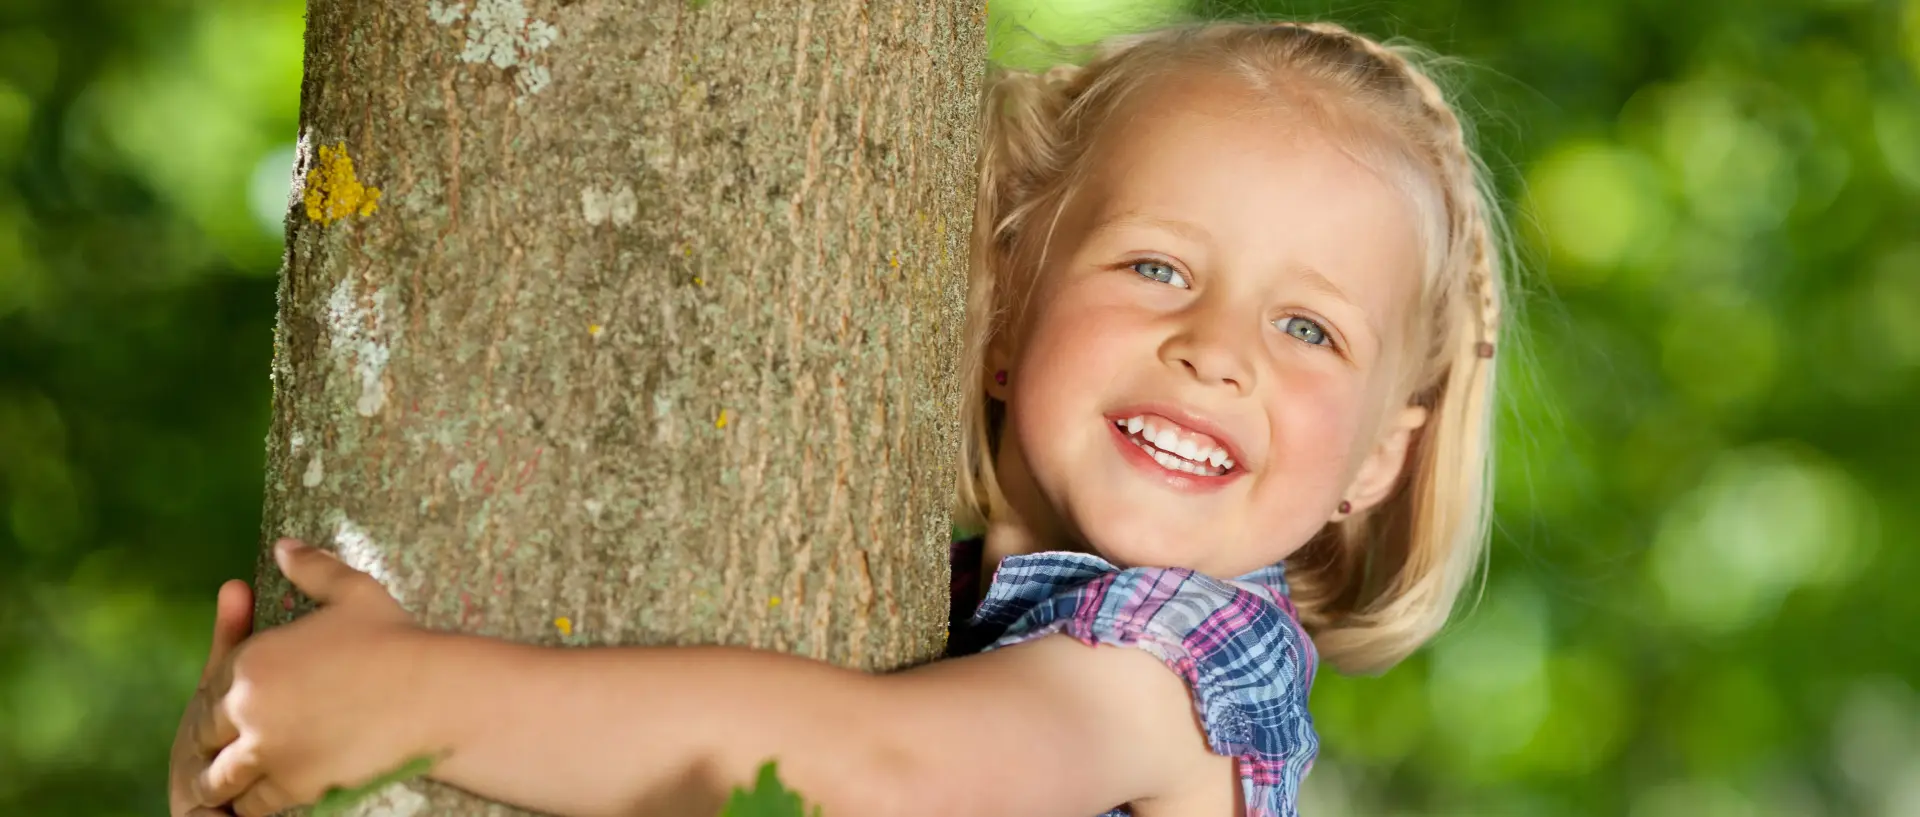 Kleines Mädchen umarmt einen Baum und lächelt in die Kamera